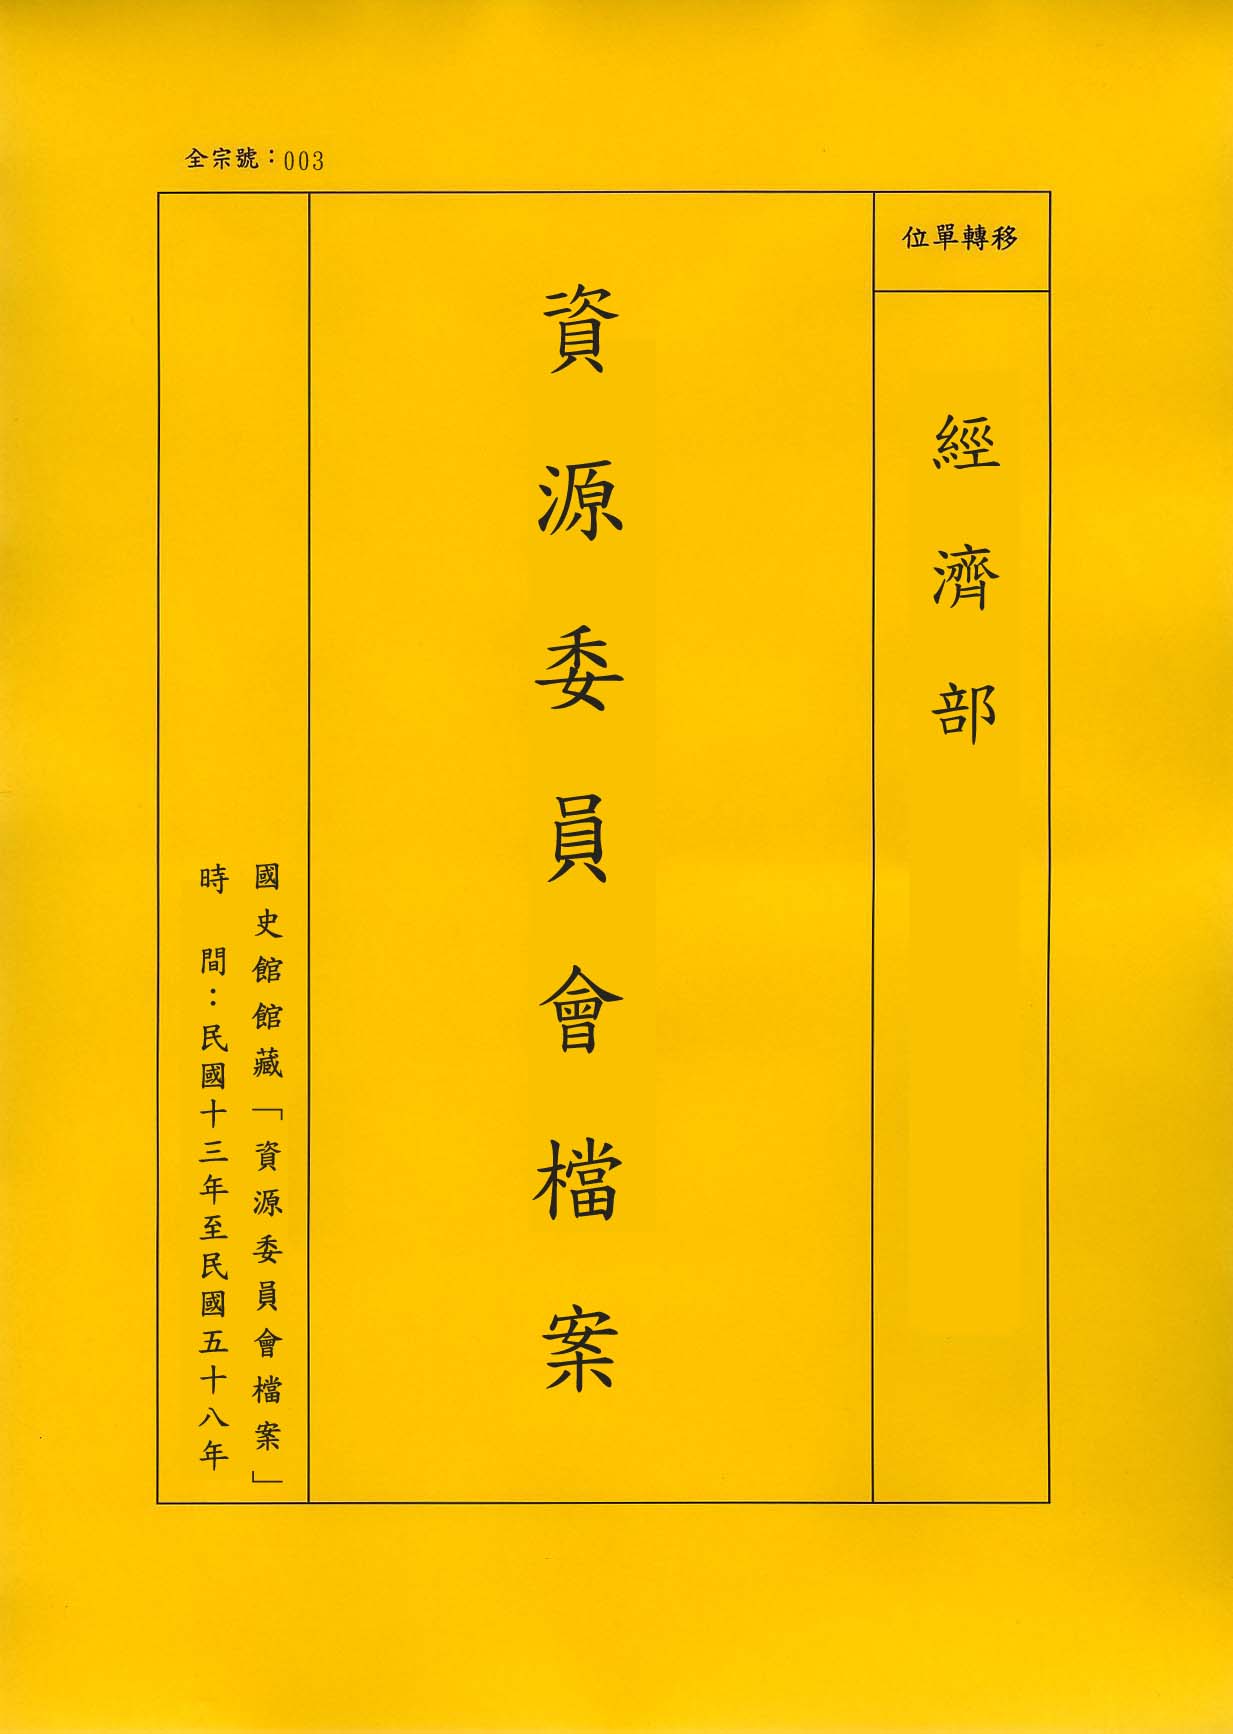 卷名:印刷業工廠調查表─重慶(003-010306-0068)